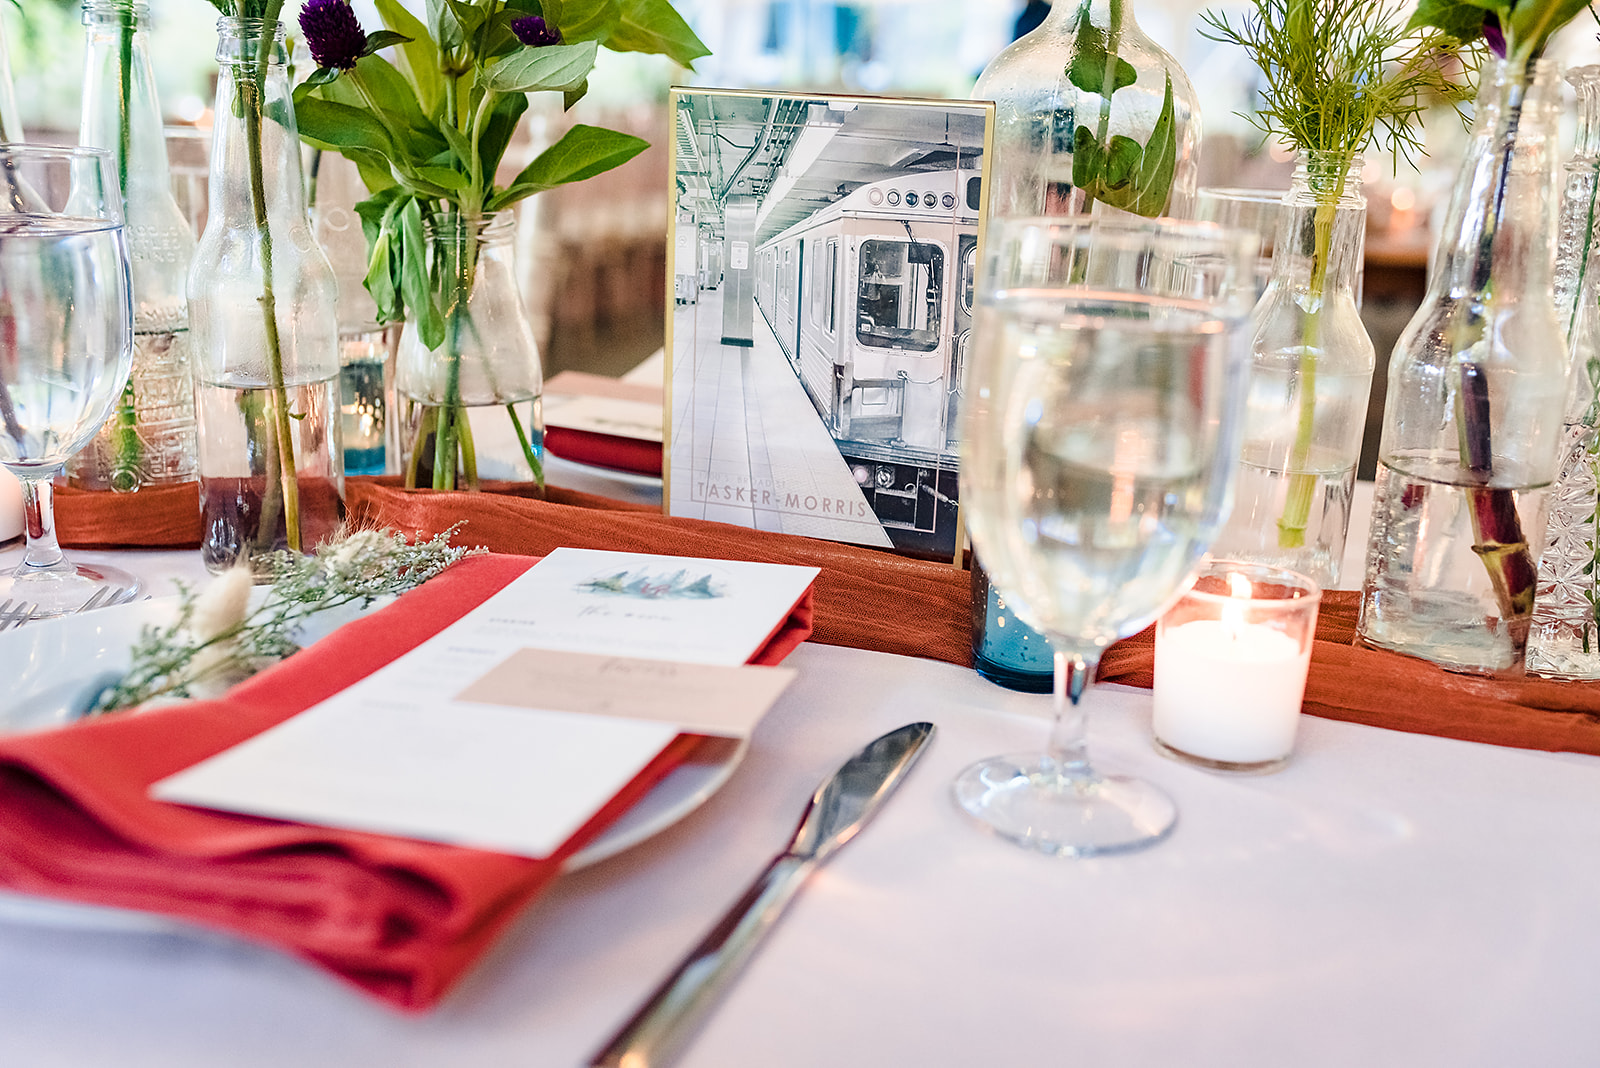 Awbury Arboretum wedding reception tablescape details